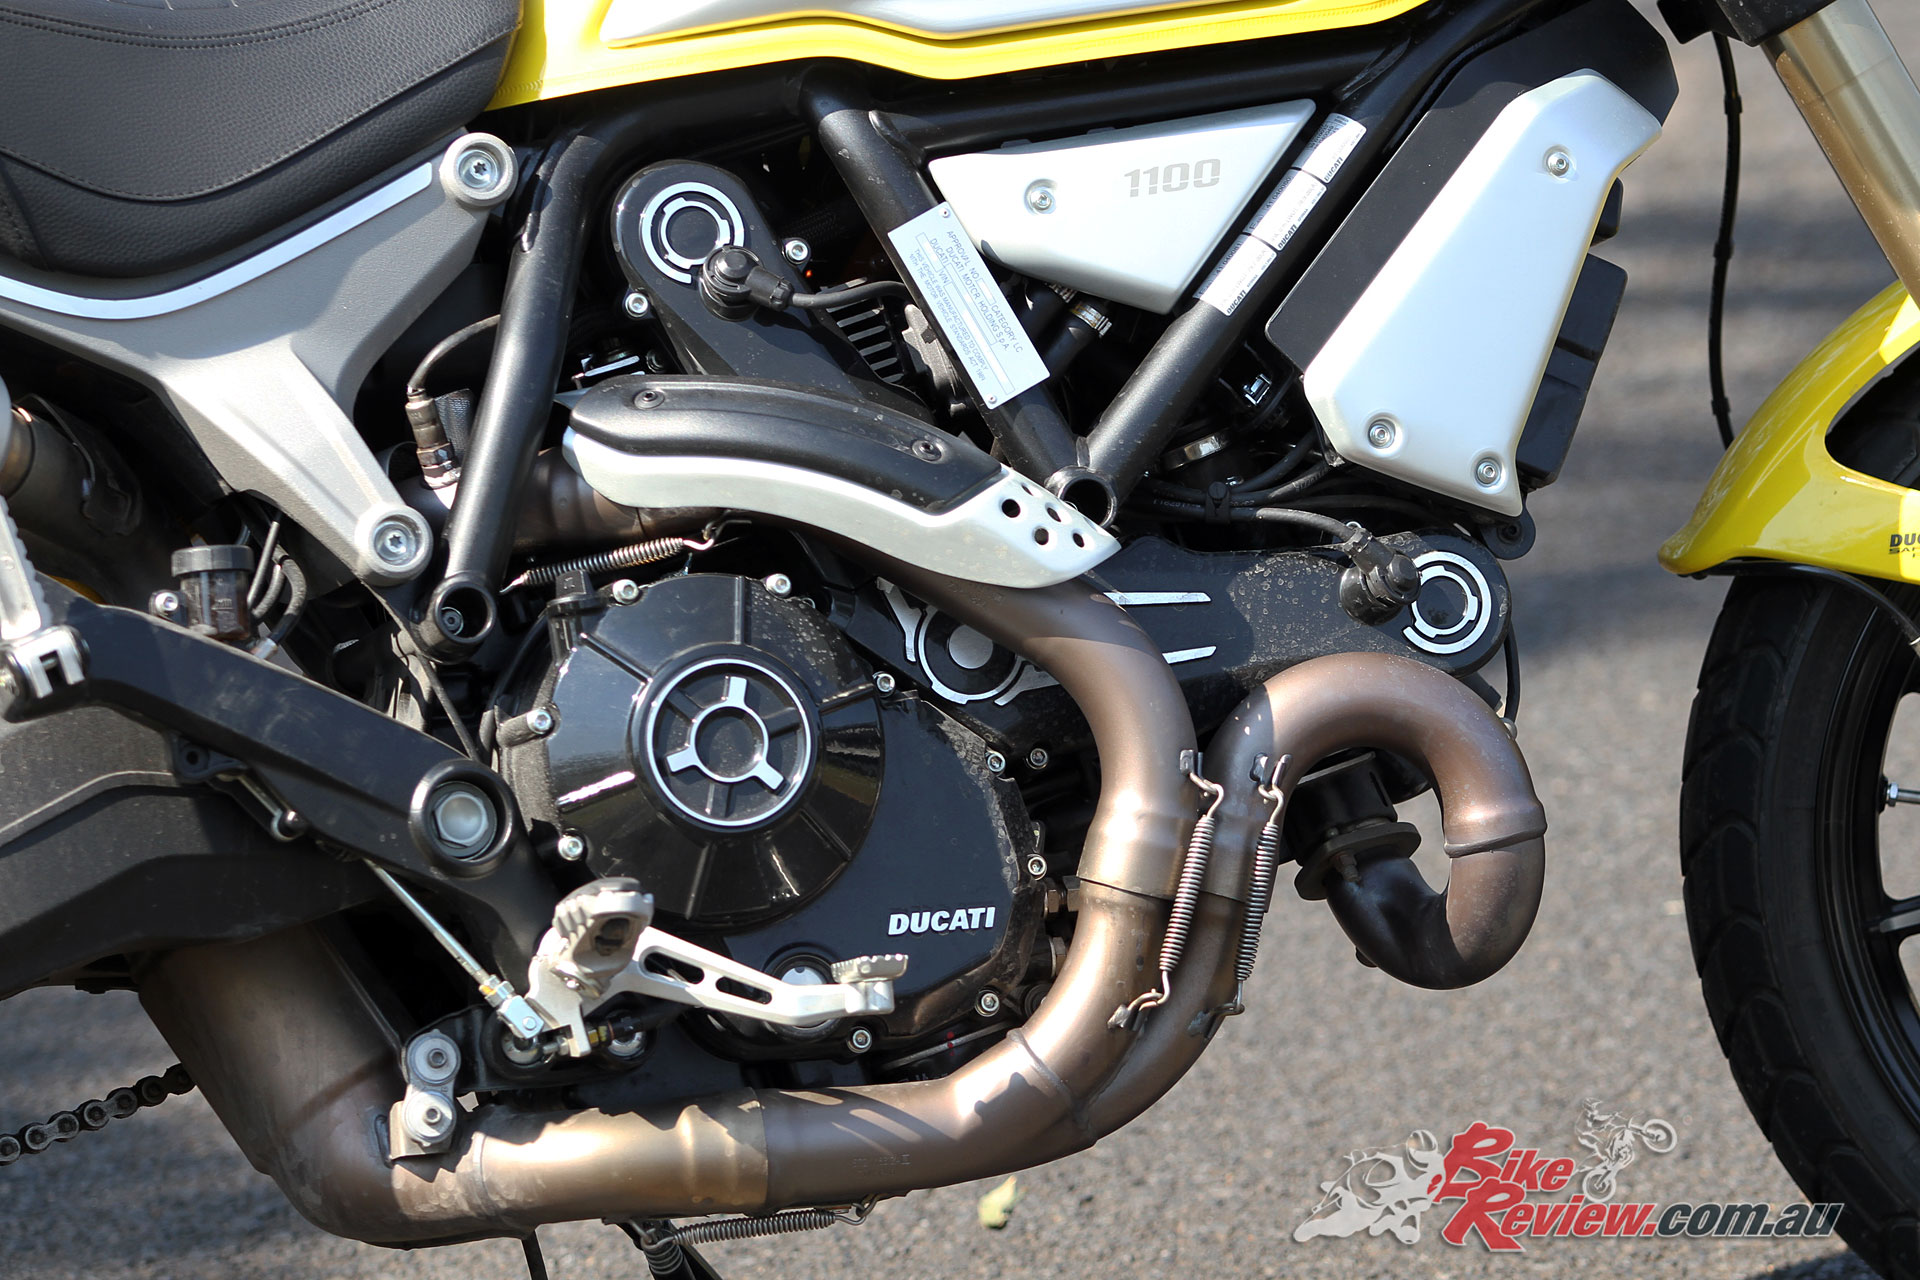 Video Review 18 Ducati Scrambler 1100 Bike Review